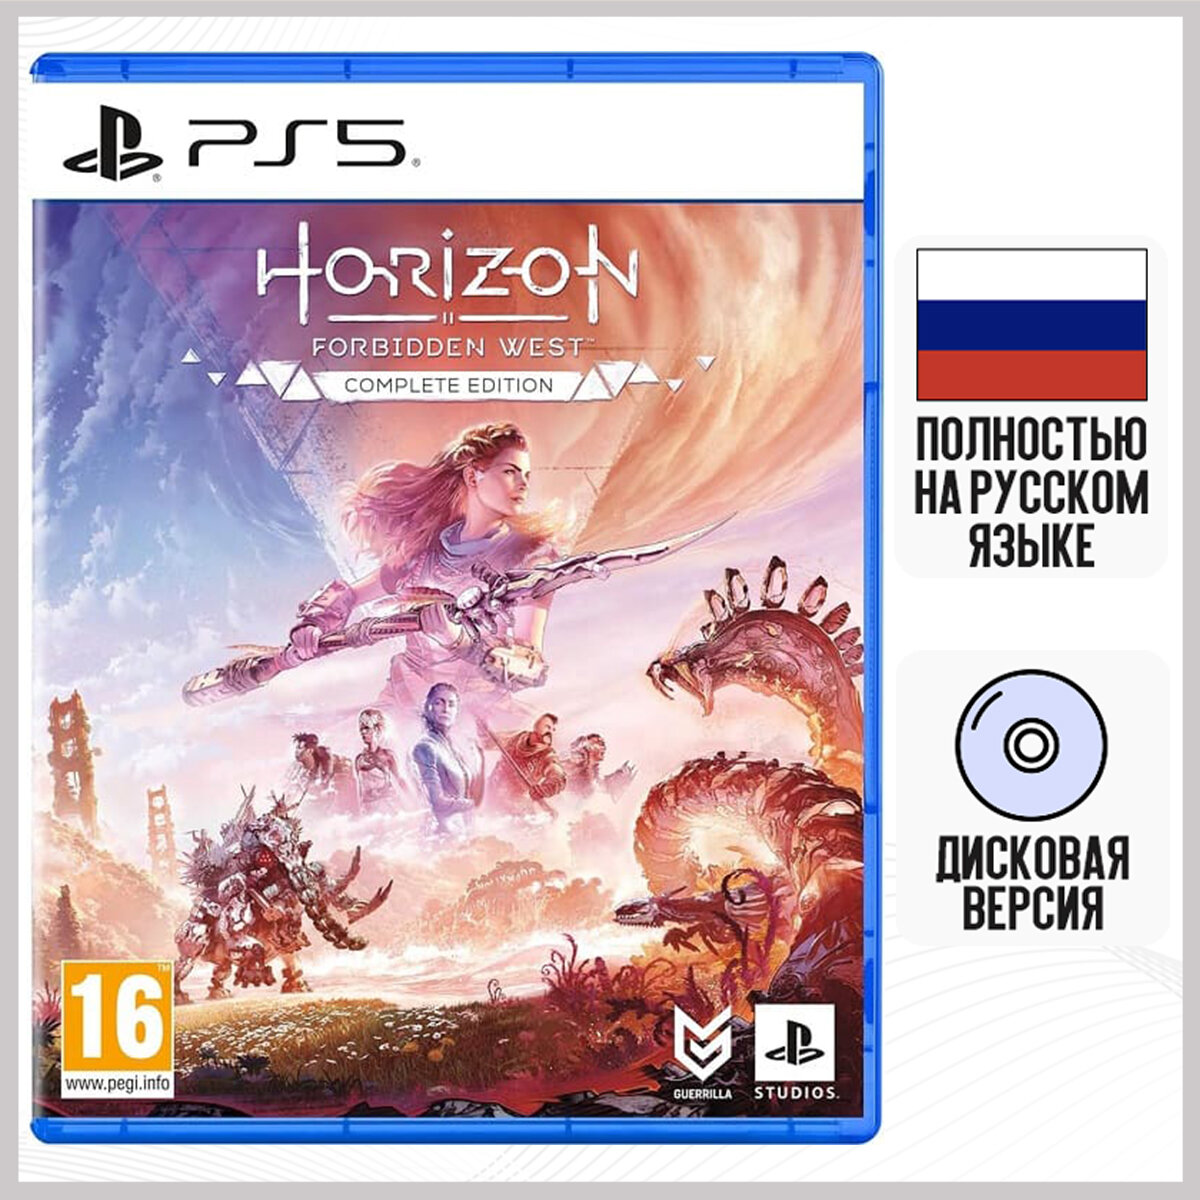 Игра Horizon Forbidden West (Запретный Запад) - Complete Edition (Полное издание) (PS5 русская версия)